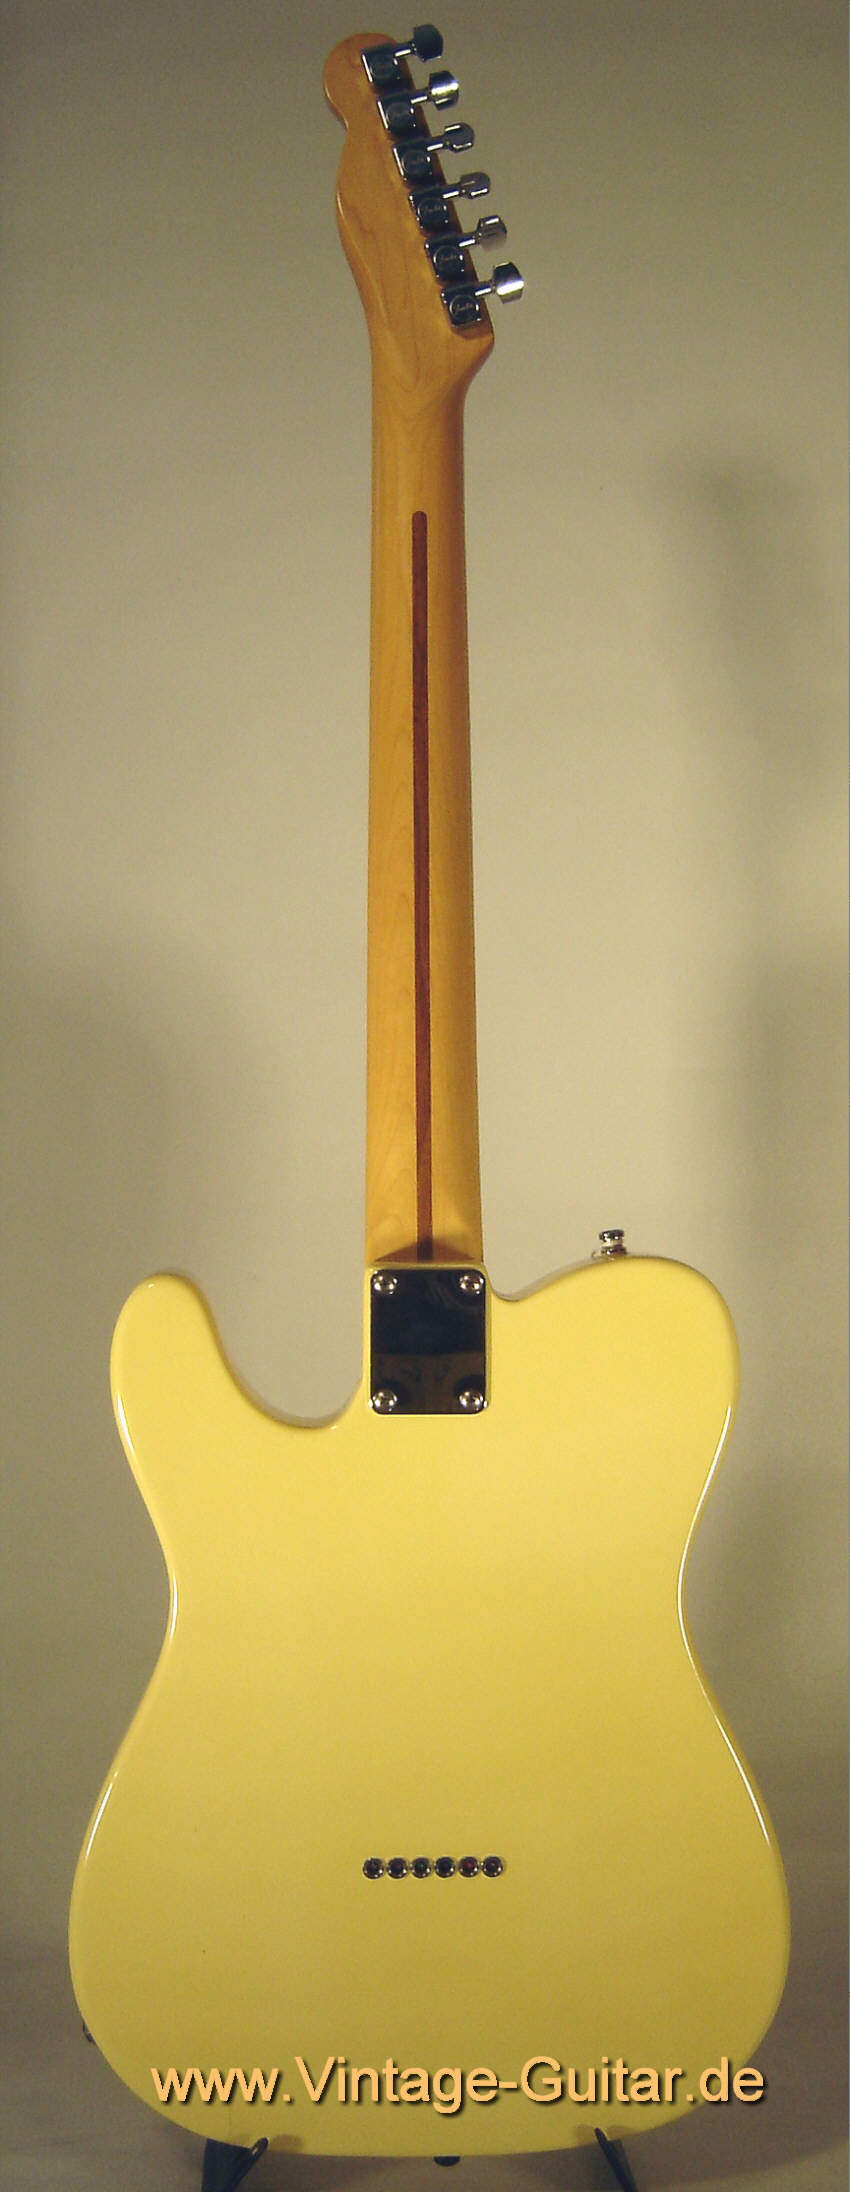 Fender Telecaster 1989 white 2.jpg